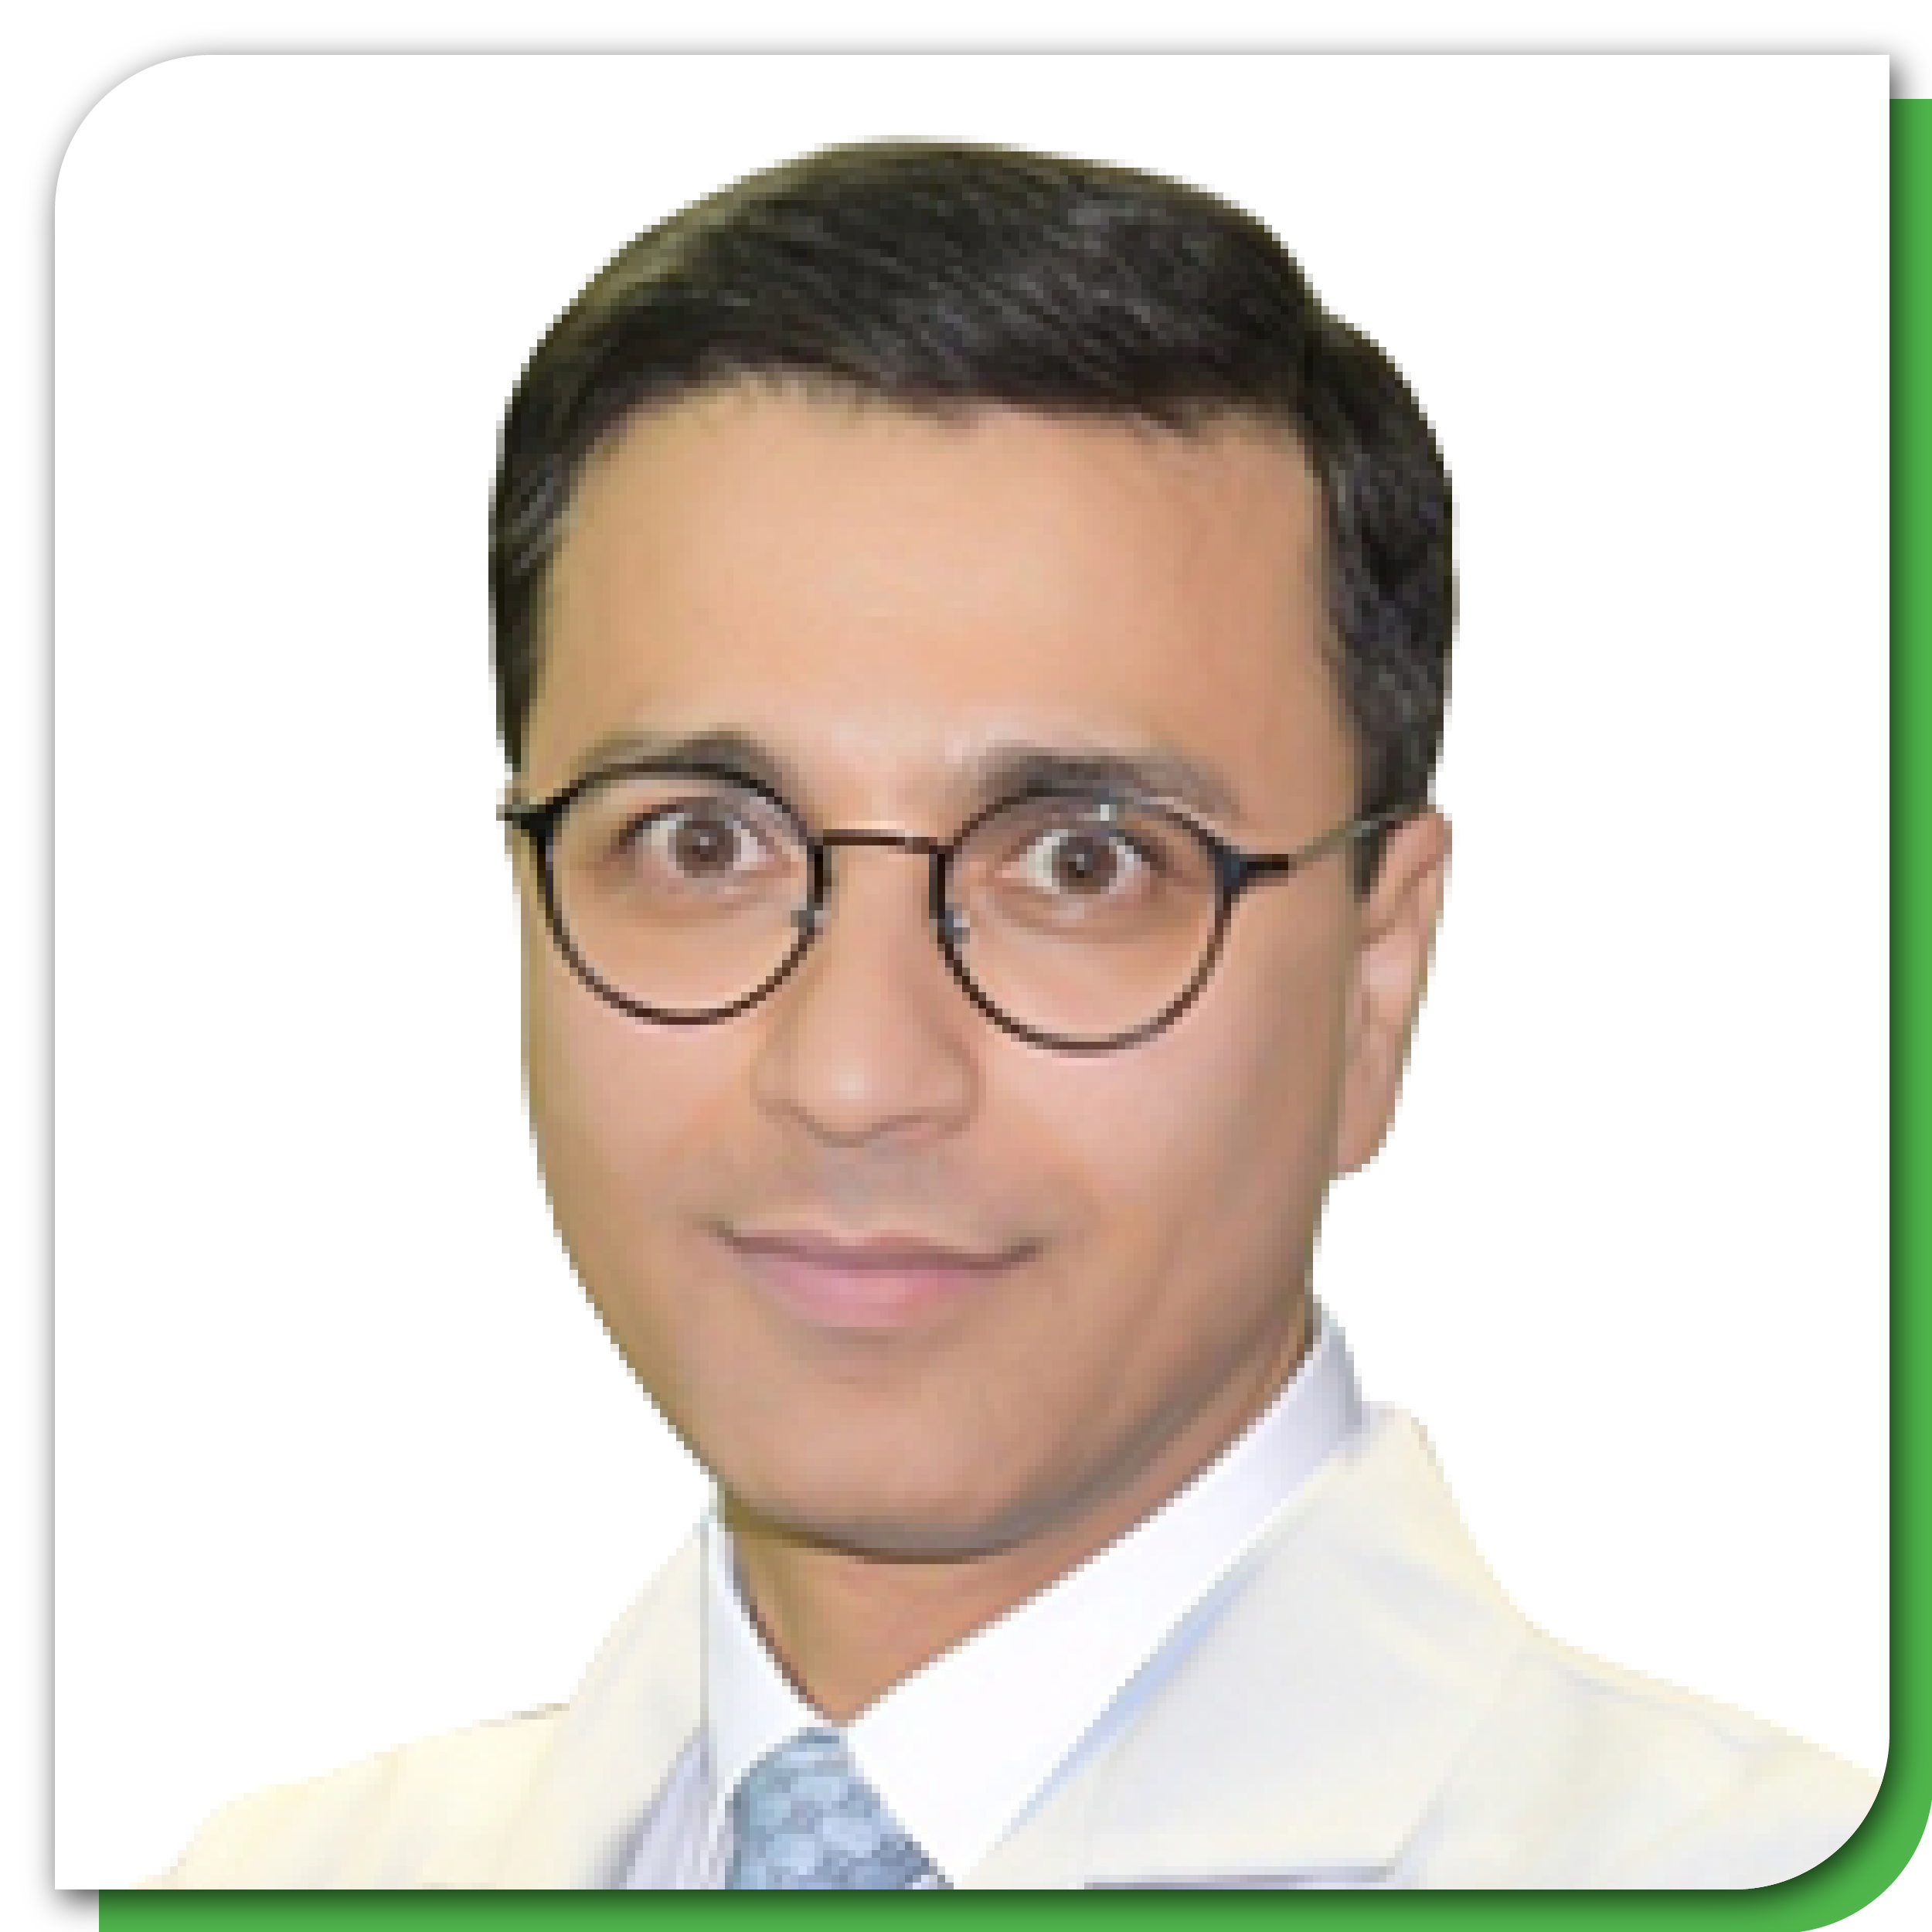 Dr. Saeed Rafii